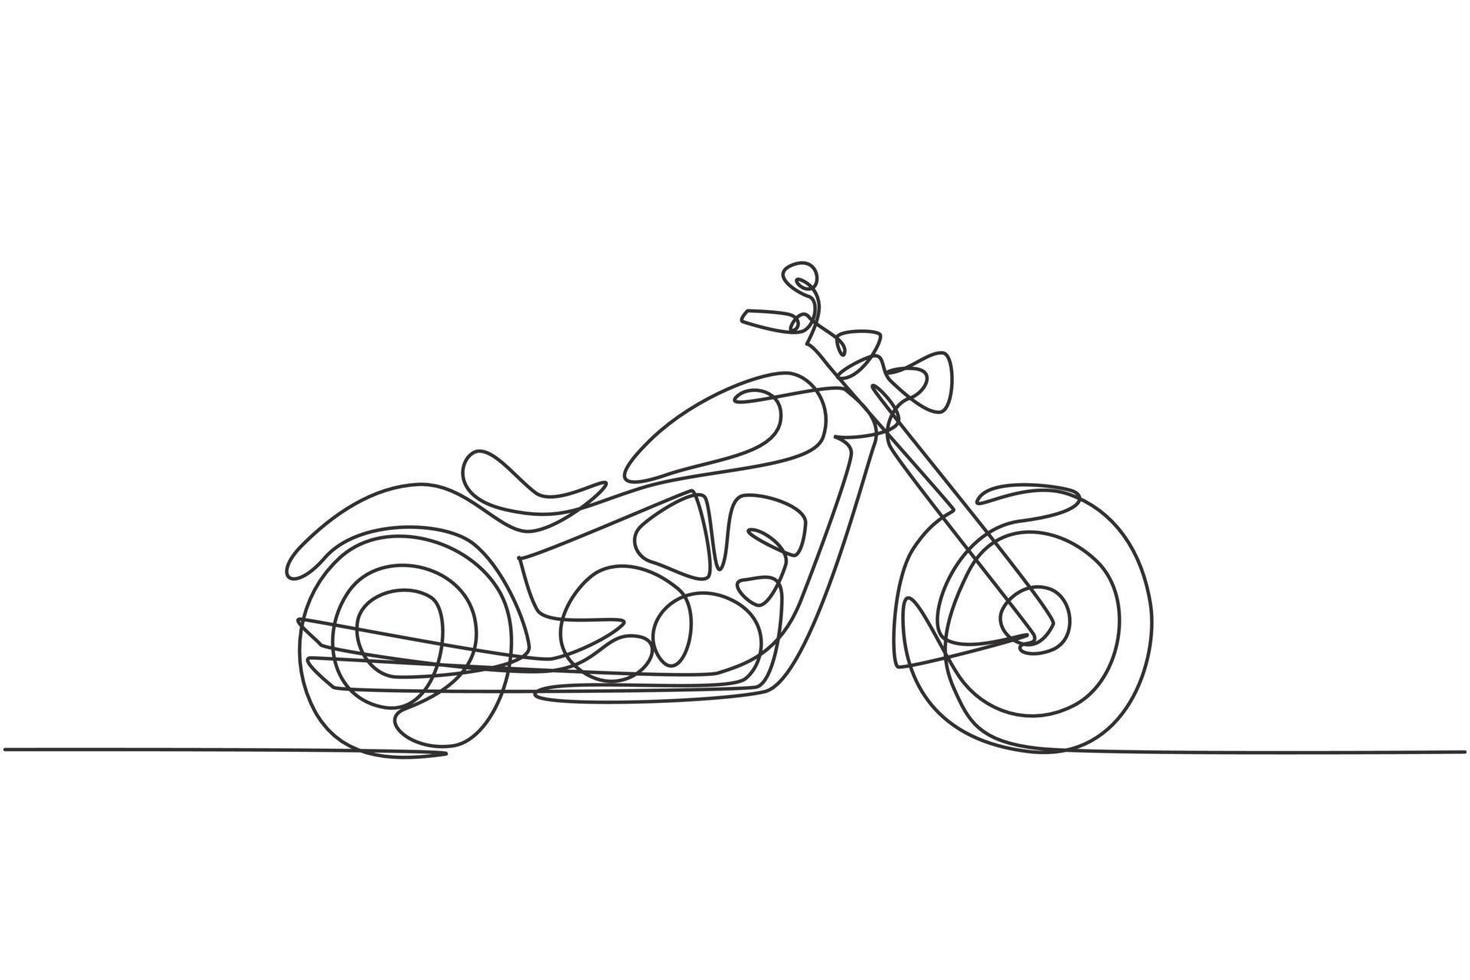 un unico disegno a tratteggio della vecchia moto d'epoca retrò. concetto di trasporto di moto d'epoca linea continua disegno illustrazione vettoriale graphic